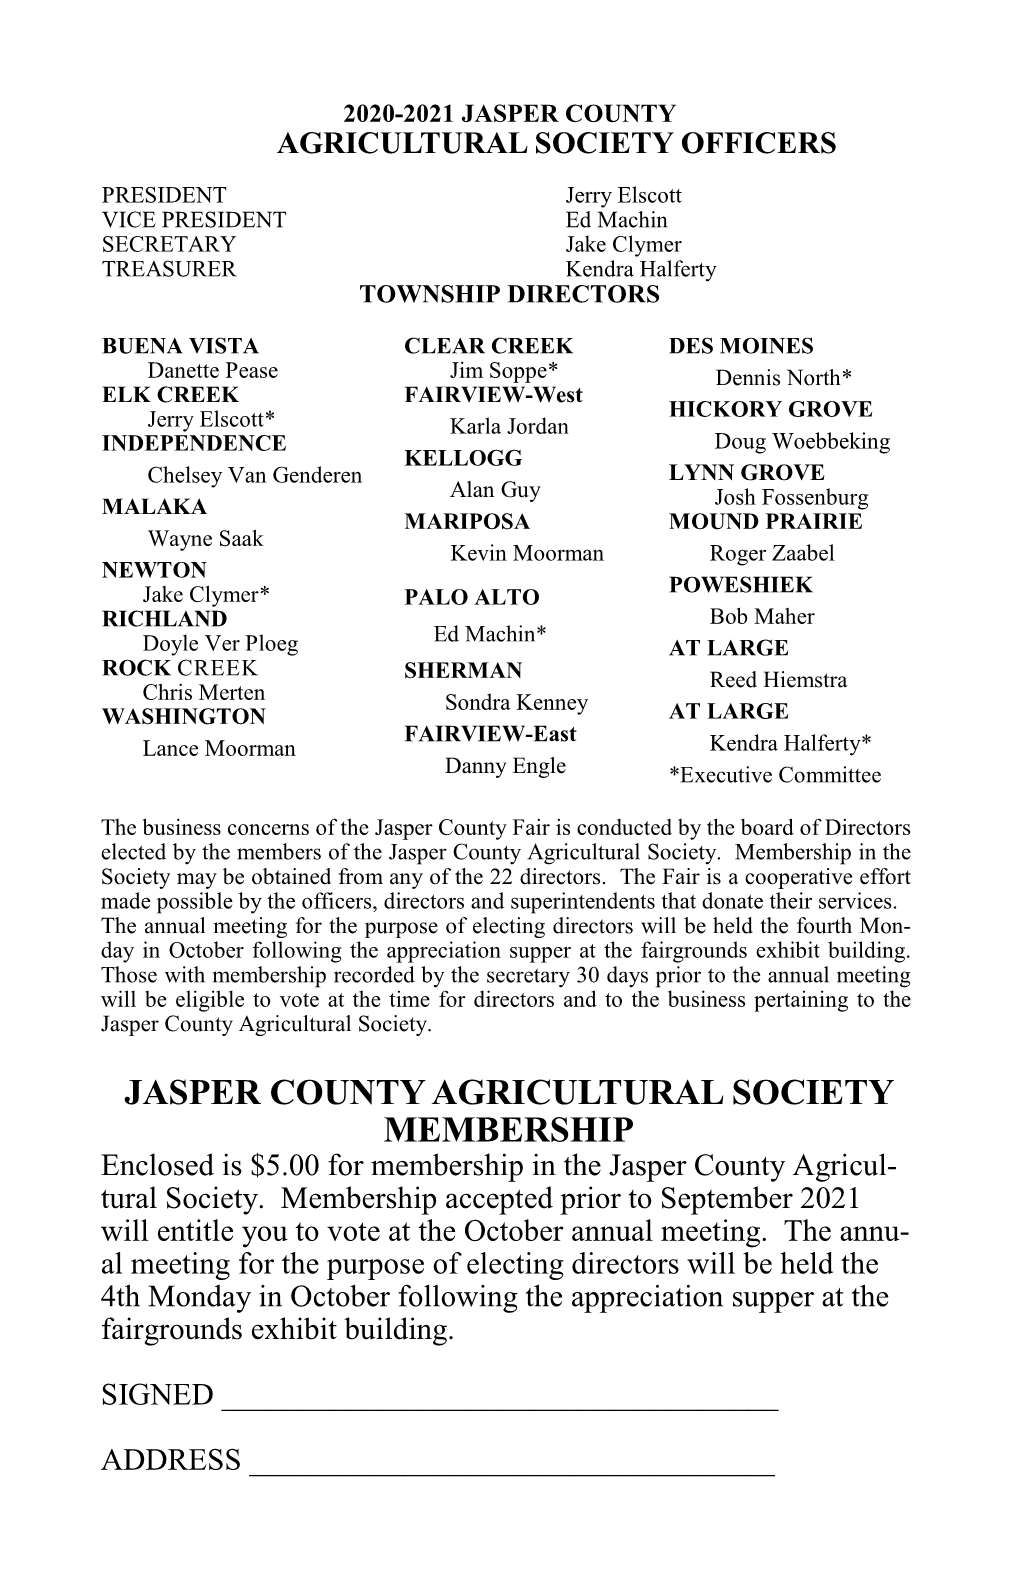 JASPER COUNTY AGRICULTURAL SOCIETY MEMBERSHIP Enclosed Is $5.00 for Membership in the Jasper County Agricul- Tural Society